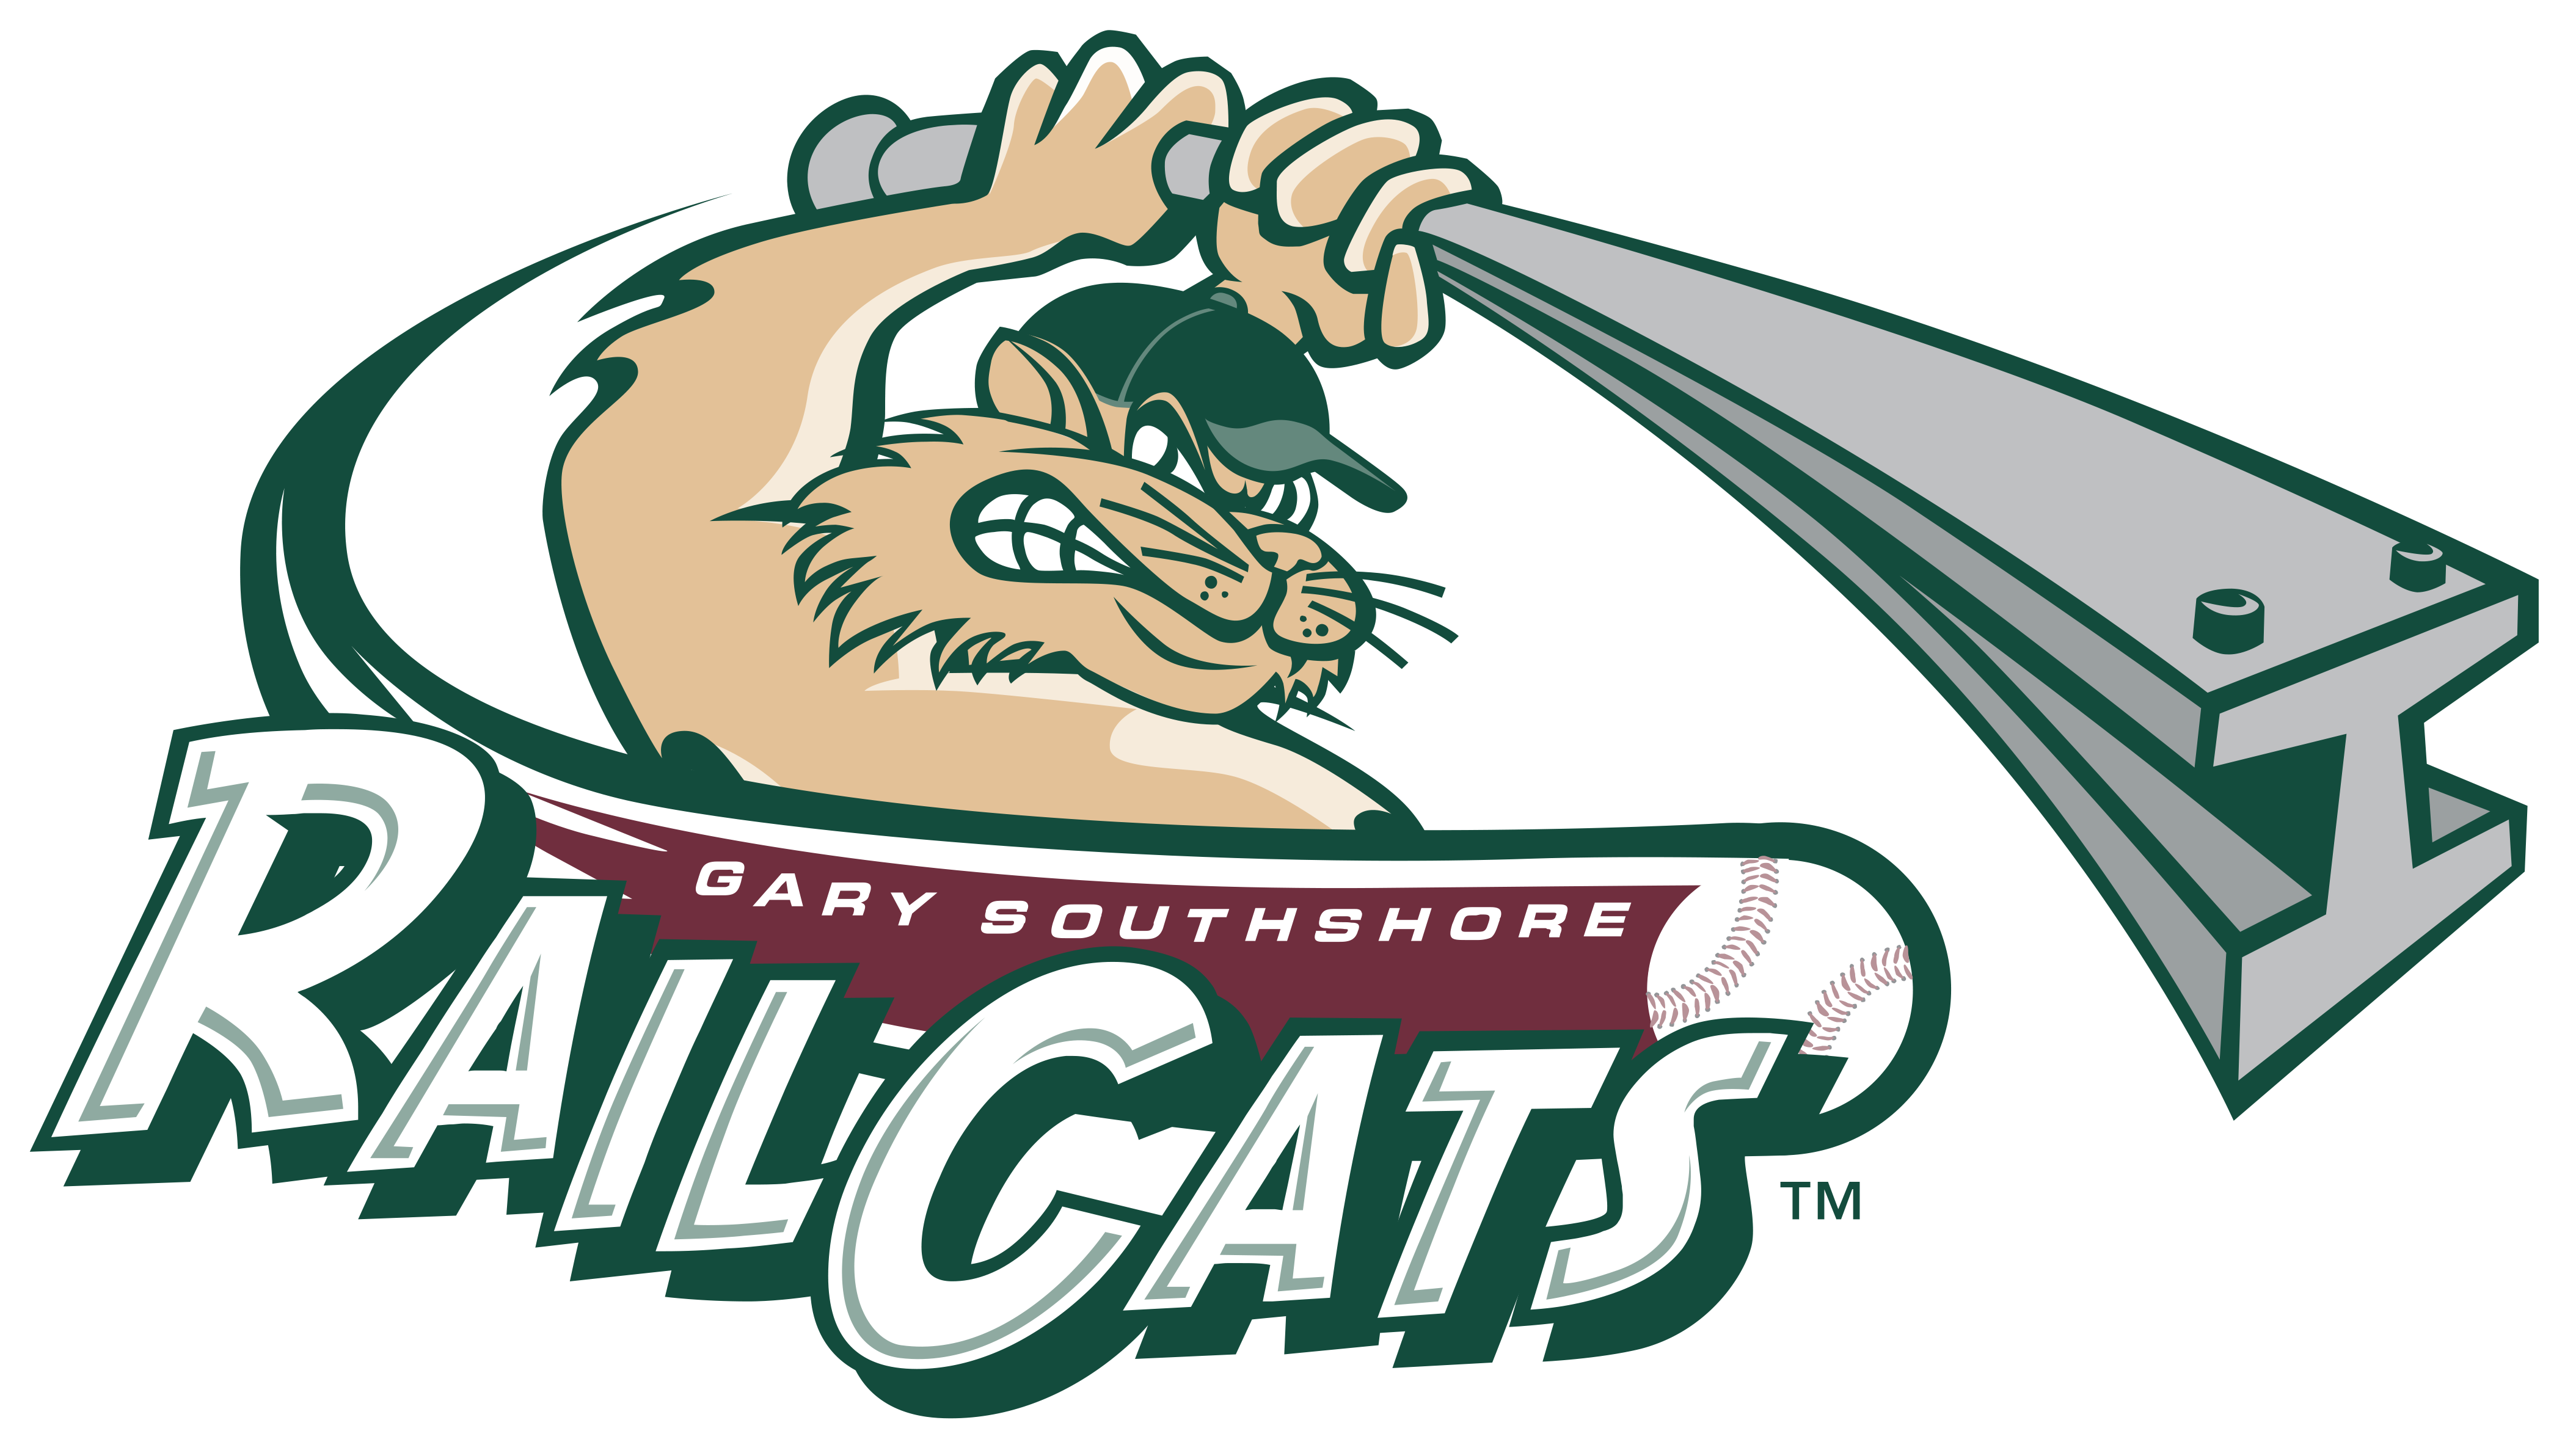 gary-southshore-railcats-team-store.myshopify.com